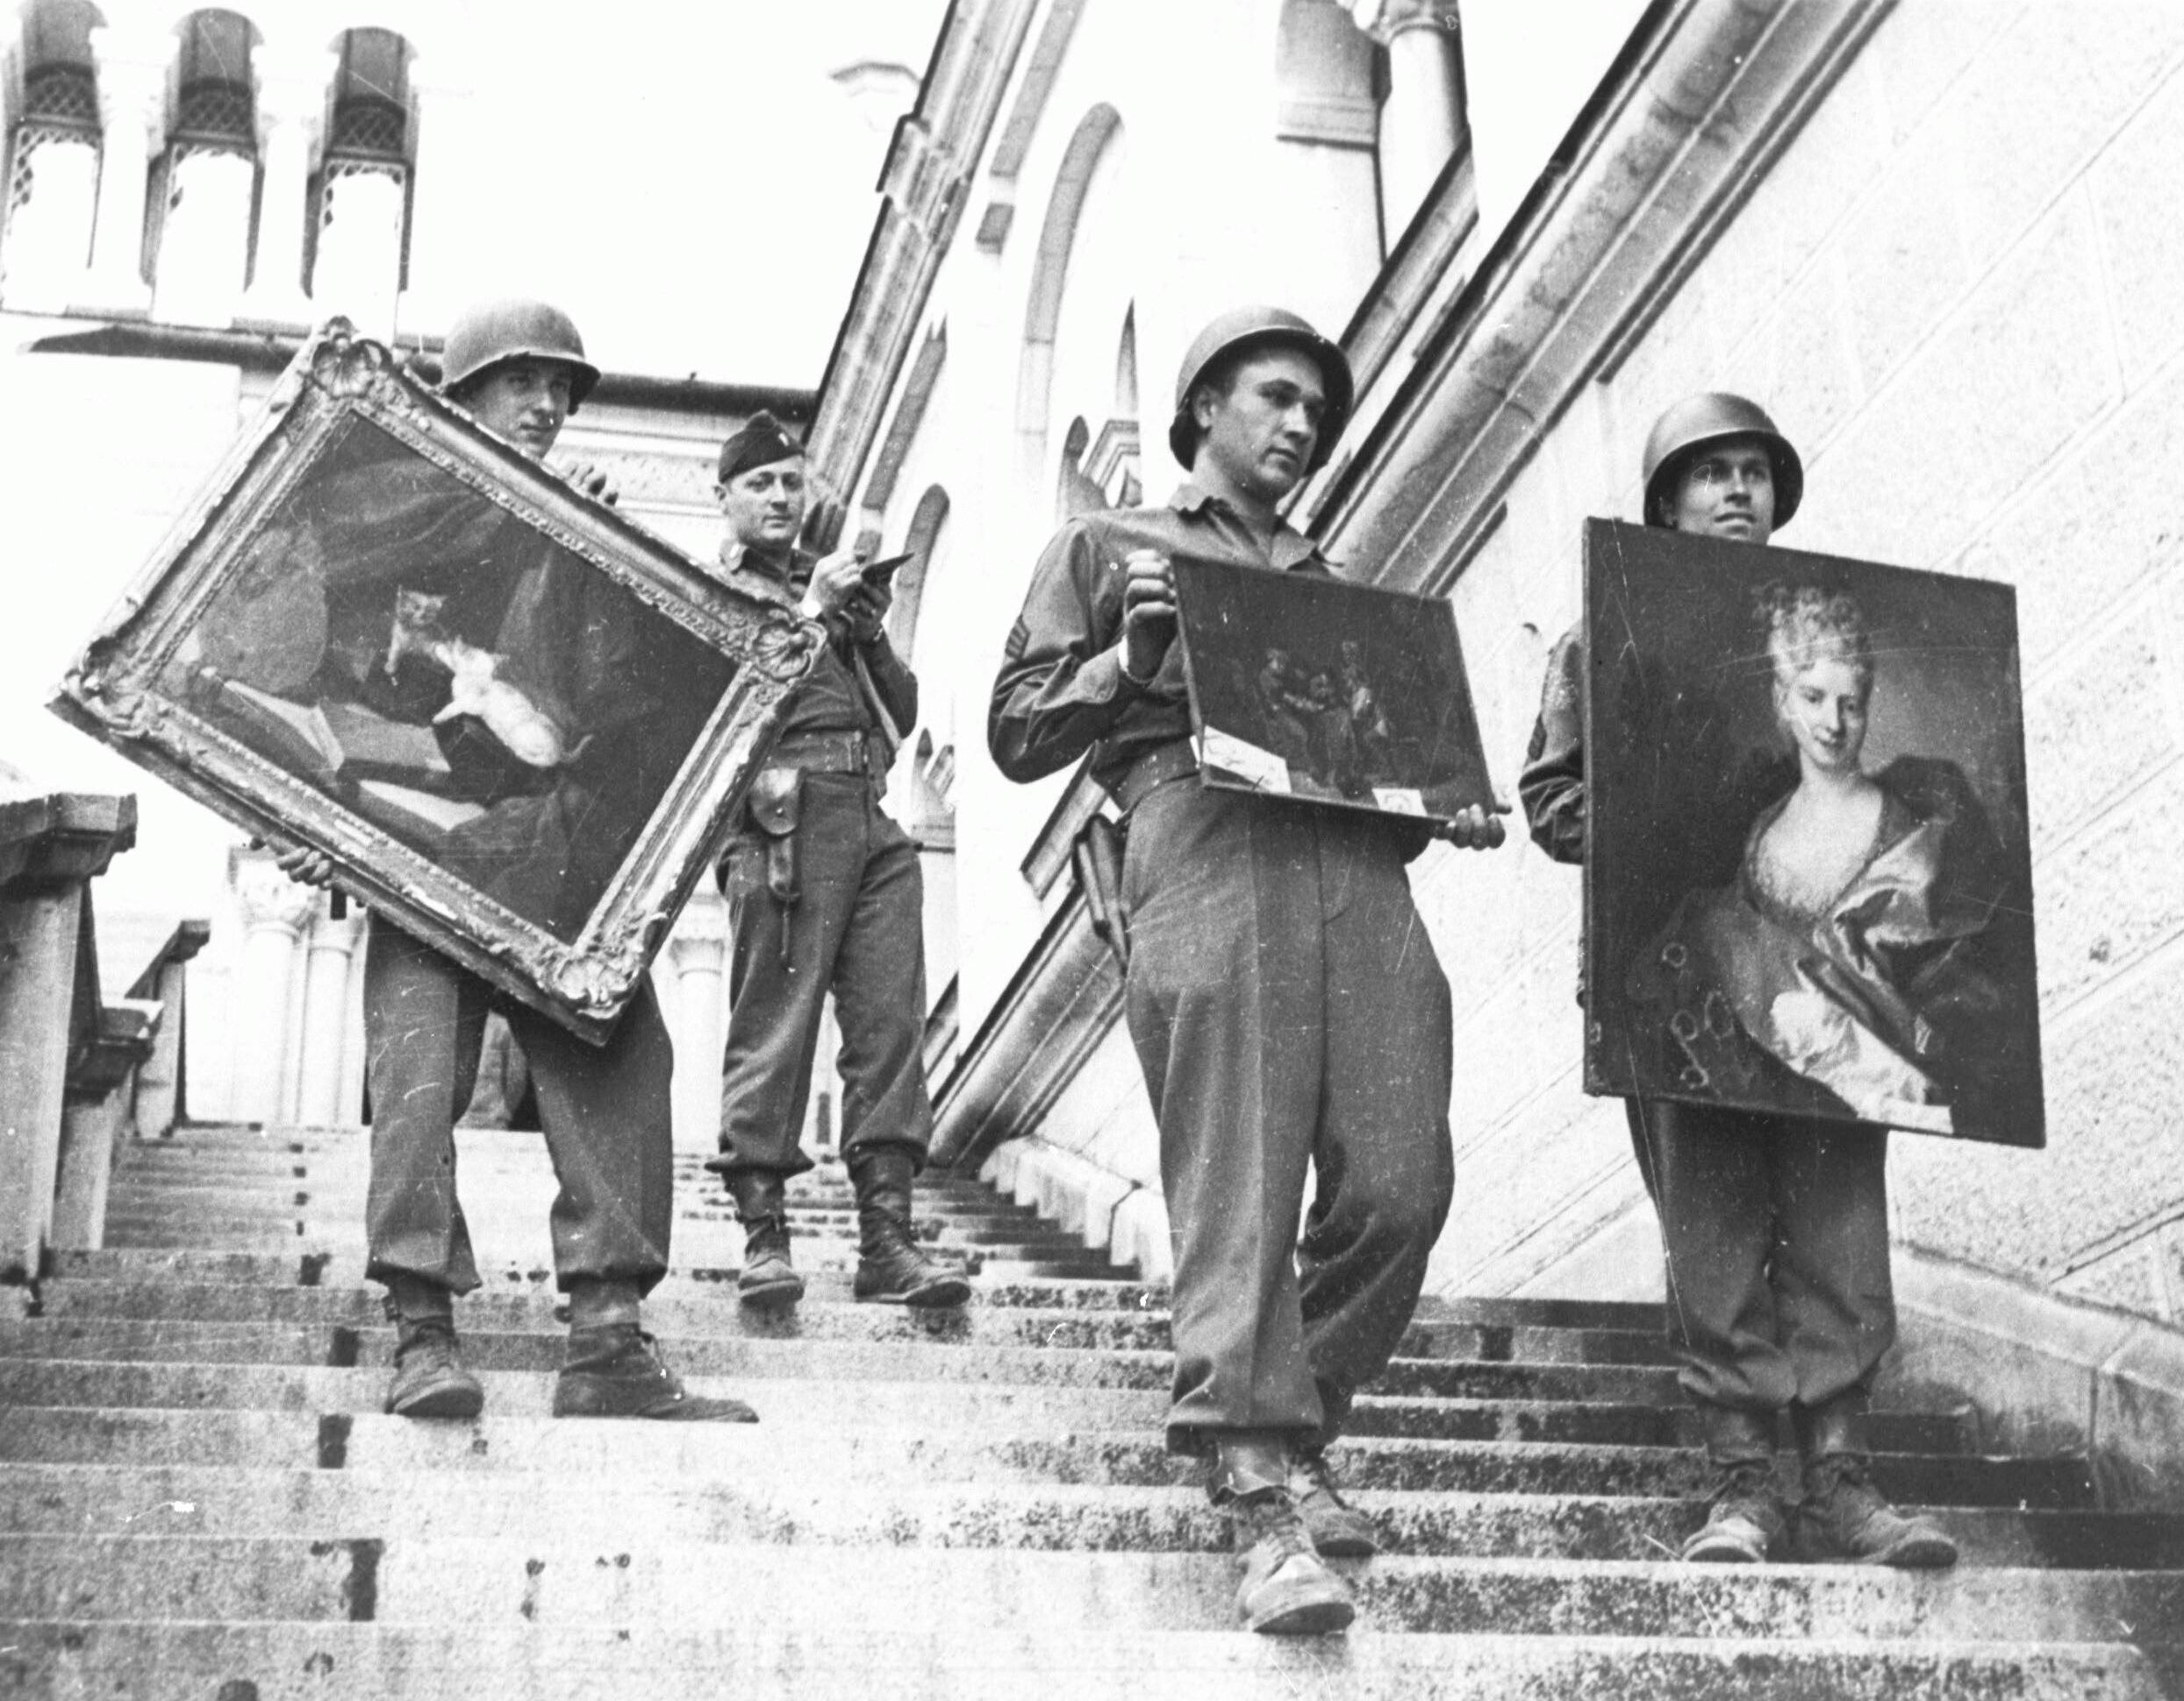 Militairen tonen schilderijen die door de Nazis geroofd en verborgen waren. Van sommigen is de herkomst bekend, van anderen moet die nog bepaald worden